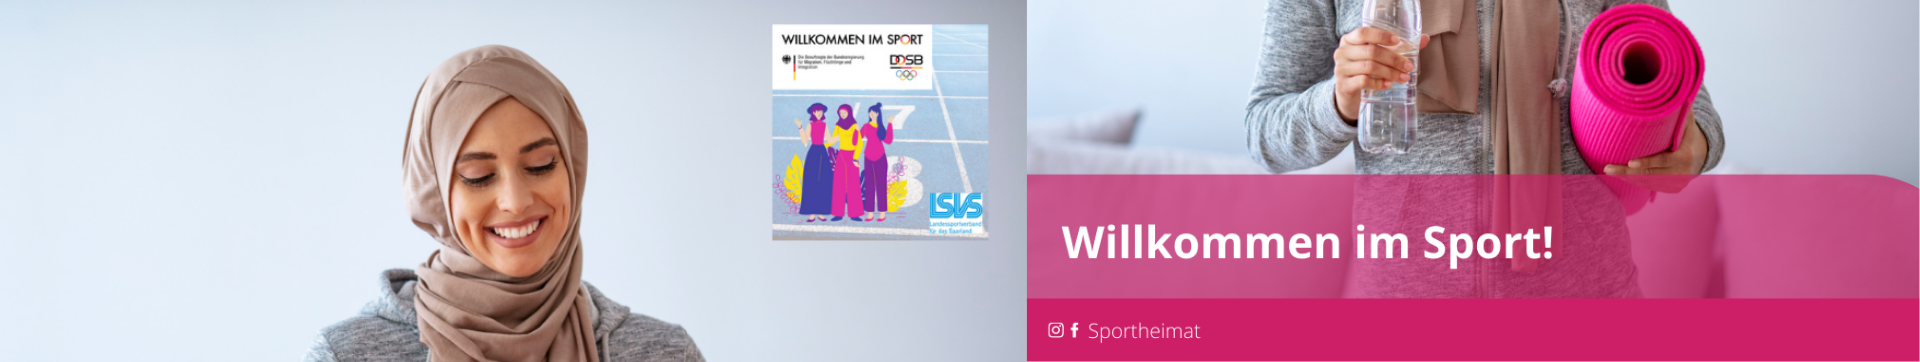 Bildwelt_Willkommen_im_Sport